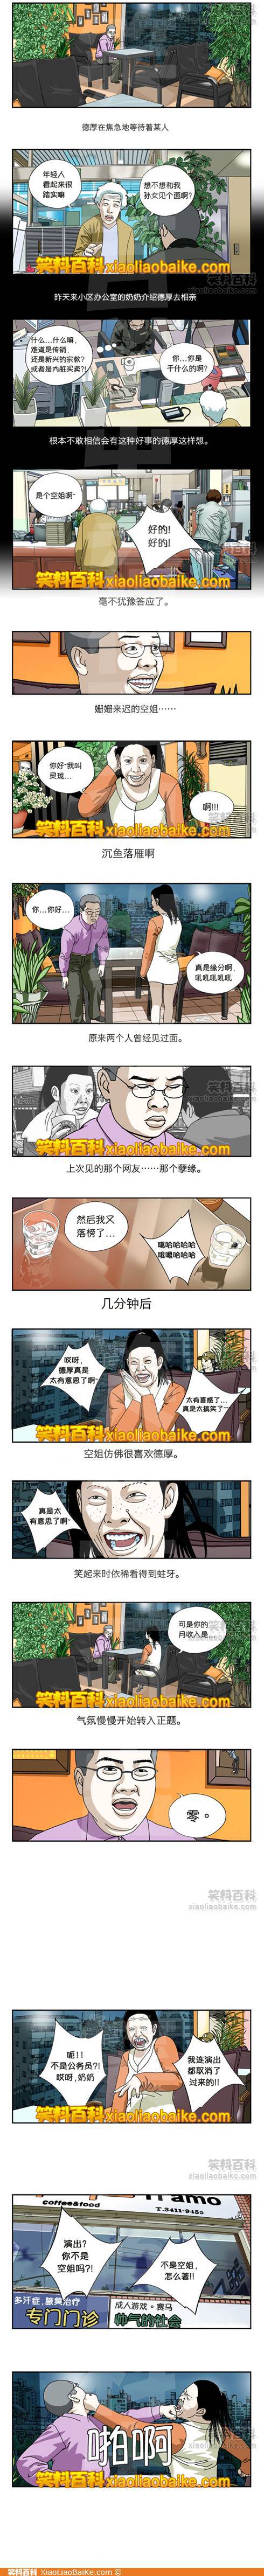 邪恶漫画爆笑囧图第29刊：摇晃